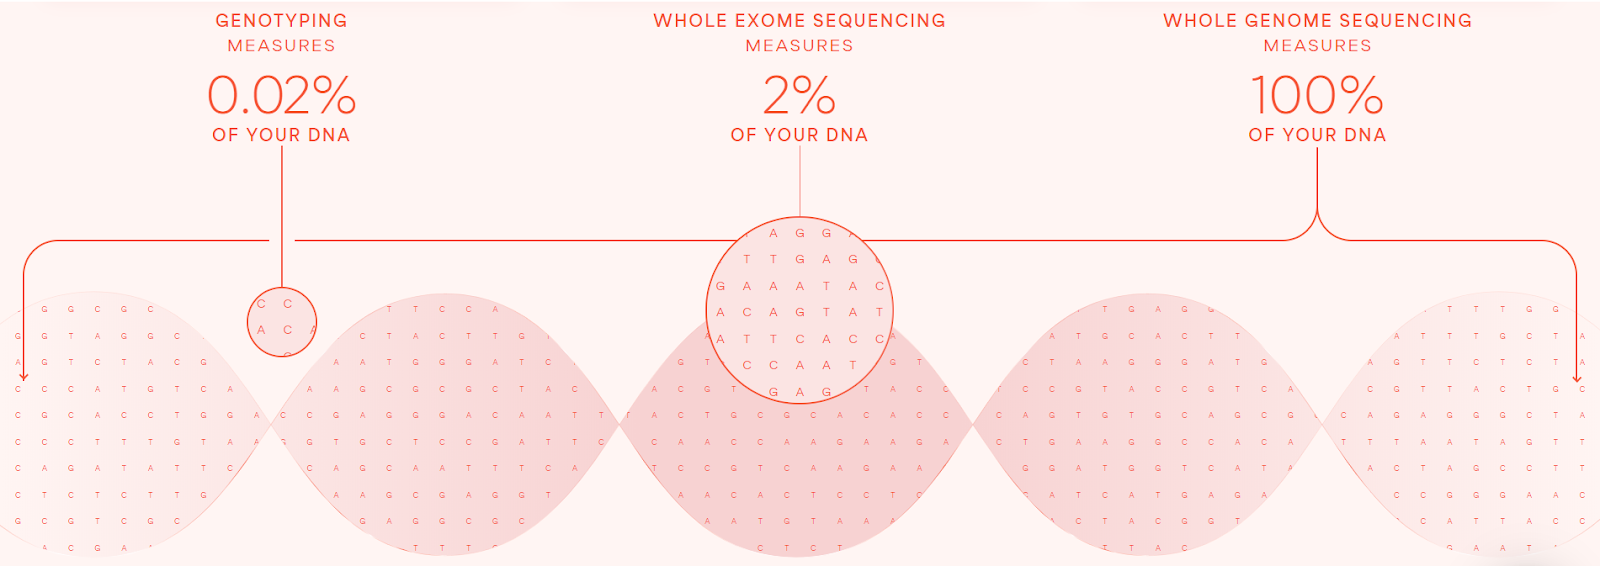 Diagramme représentant le pourcentage de votre ADN mesuré par gentotypage, séquençage de l'exome entier et séquençage du génome entier chez Sano Genetics.